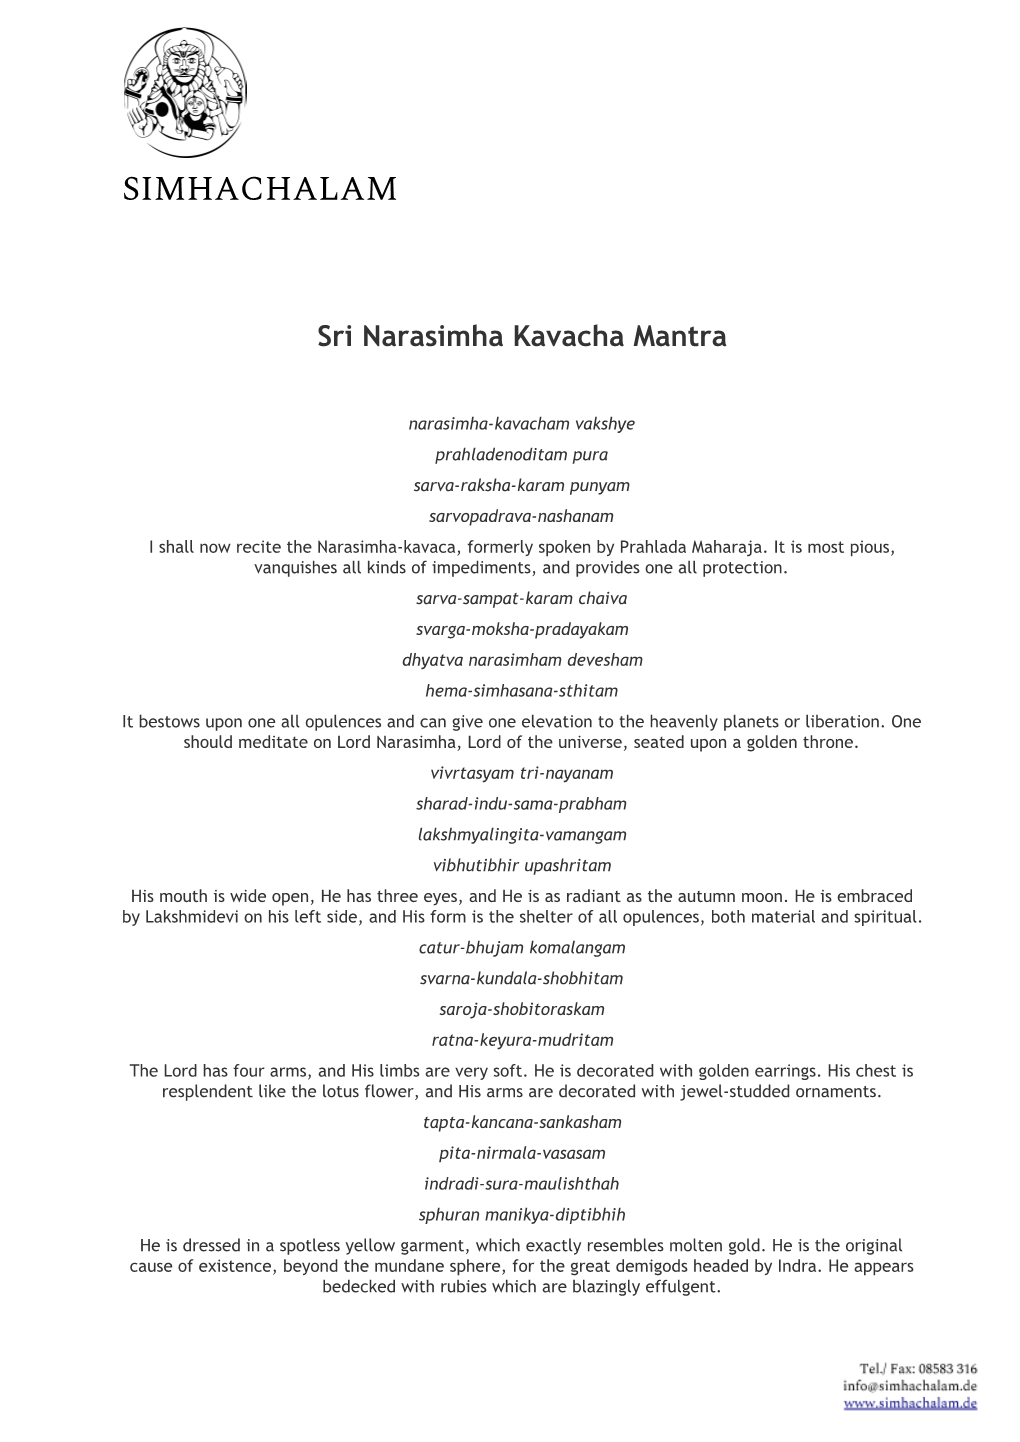 Narasimha Kavacha Mantra